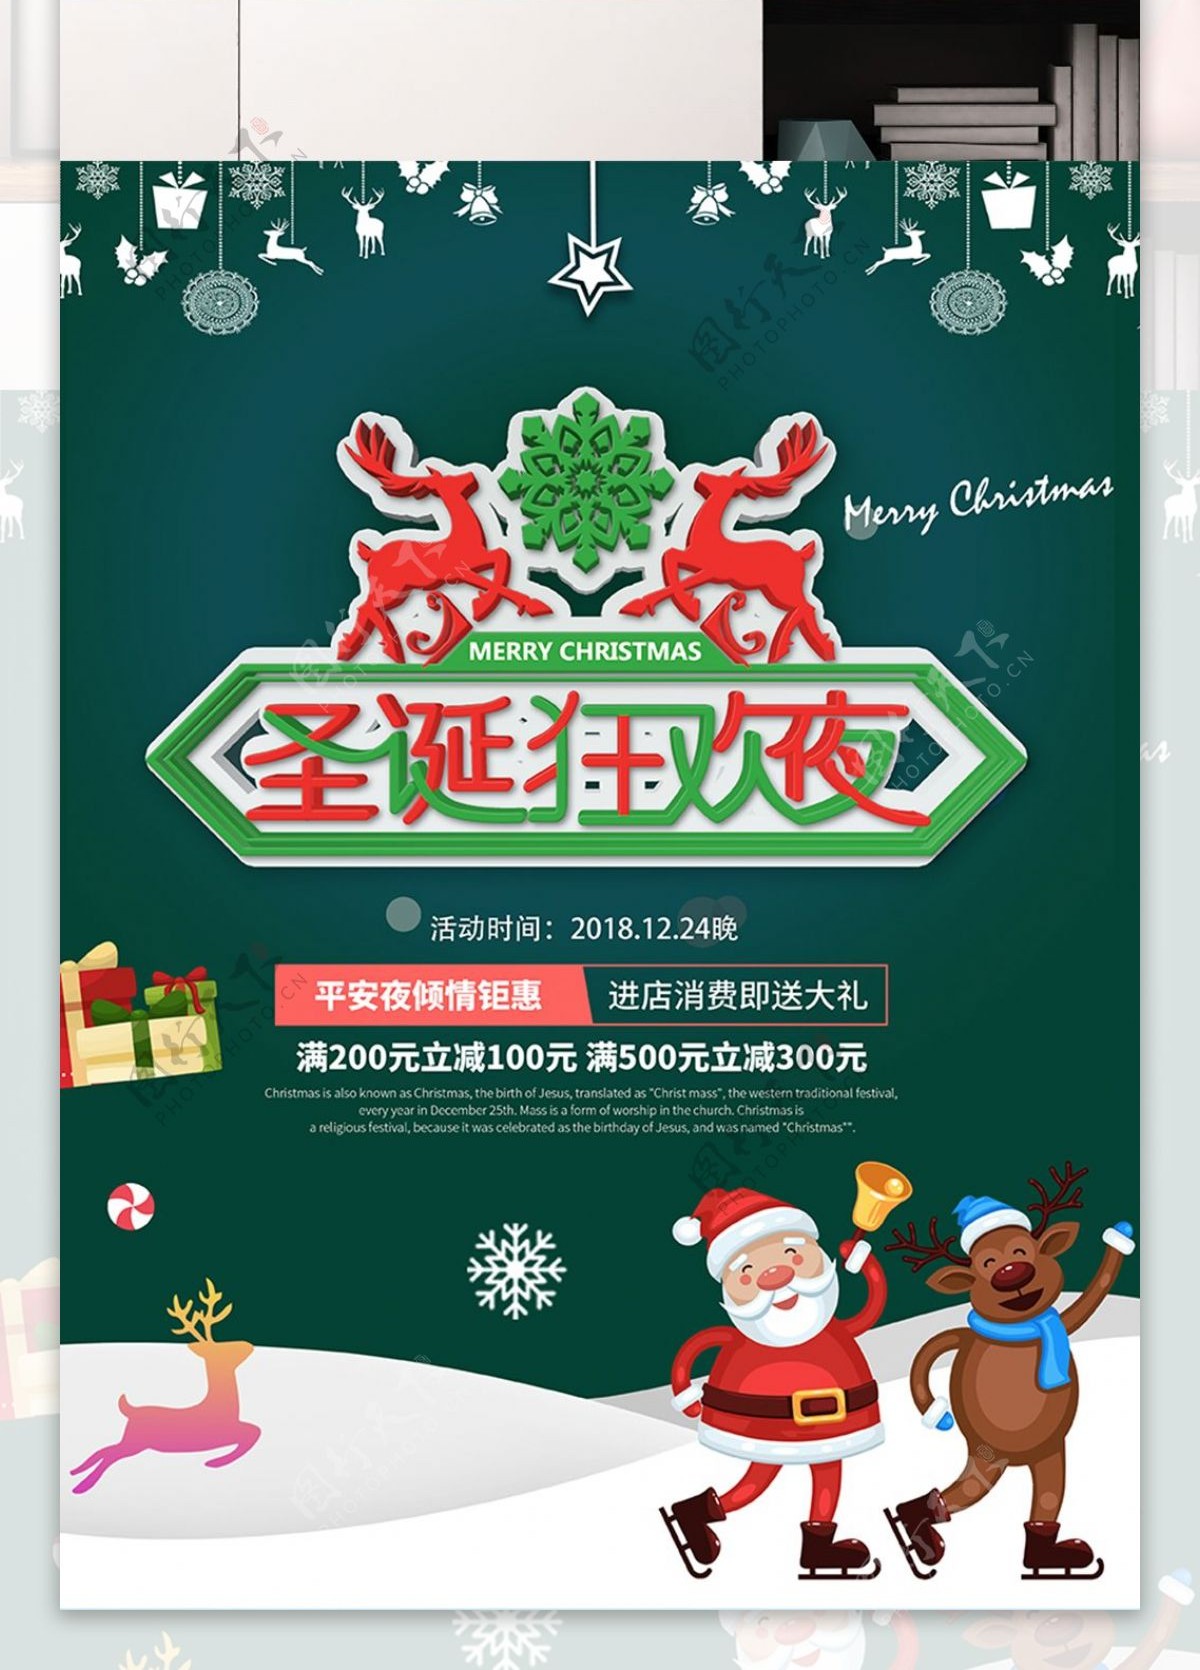 绿色圣诞节狂欢促销节日海报